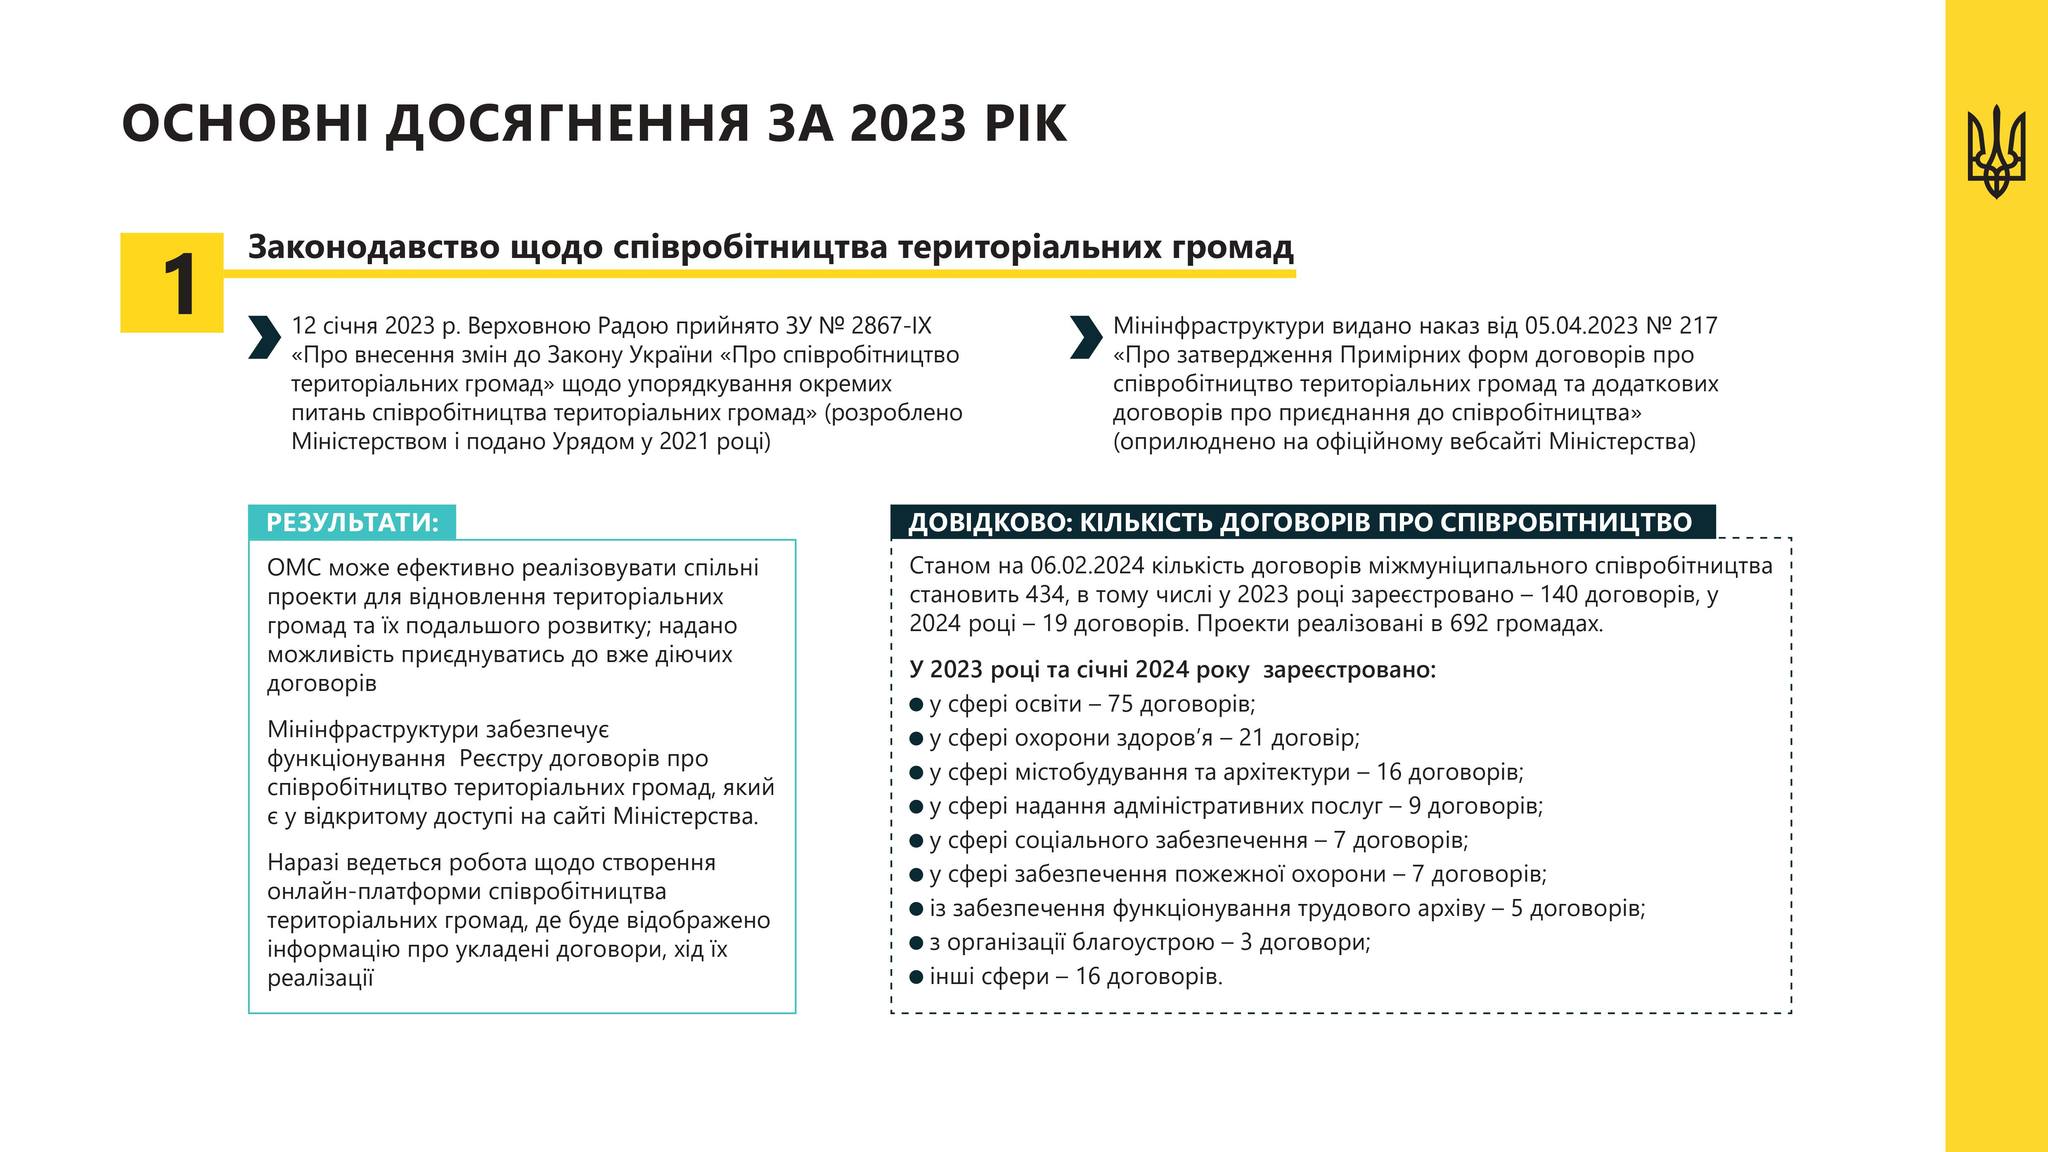 Міністерство інфраструктури презентувало результати роботи та плани на 2024 рік щодо регіональної політики та децентралізації